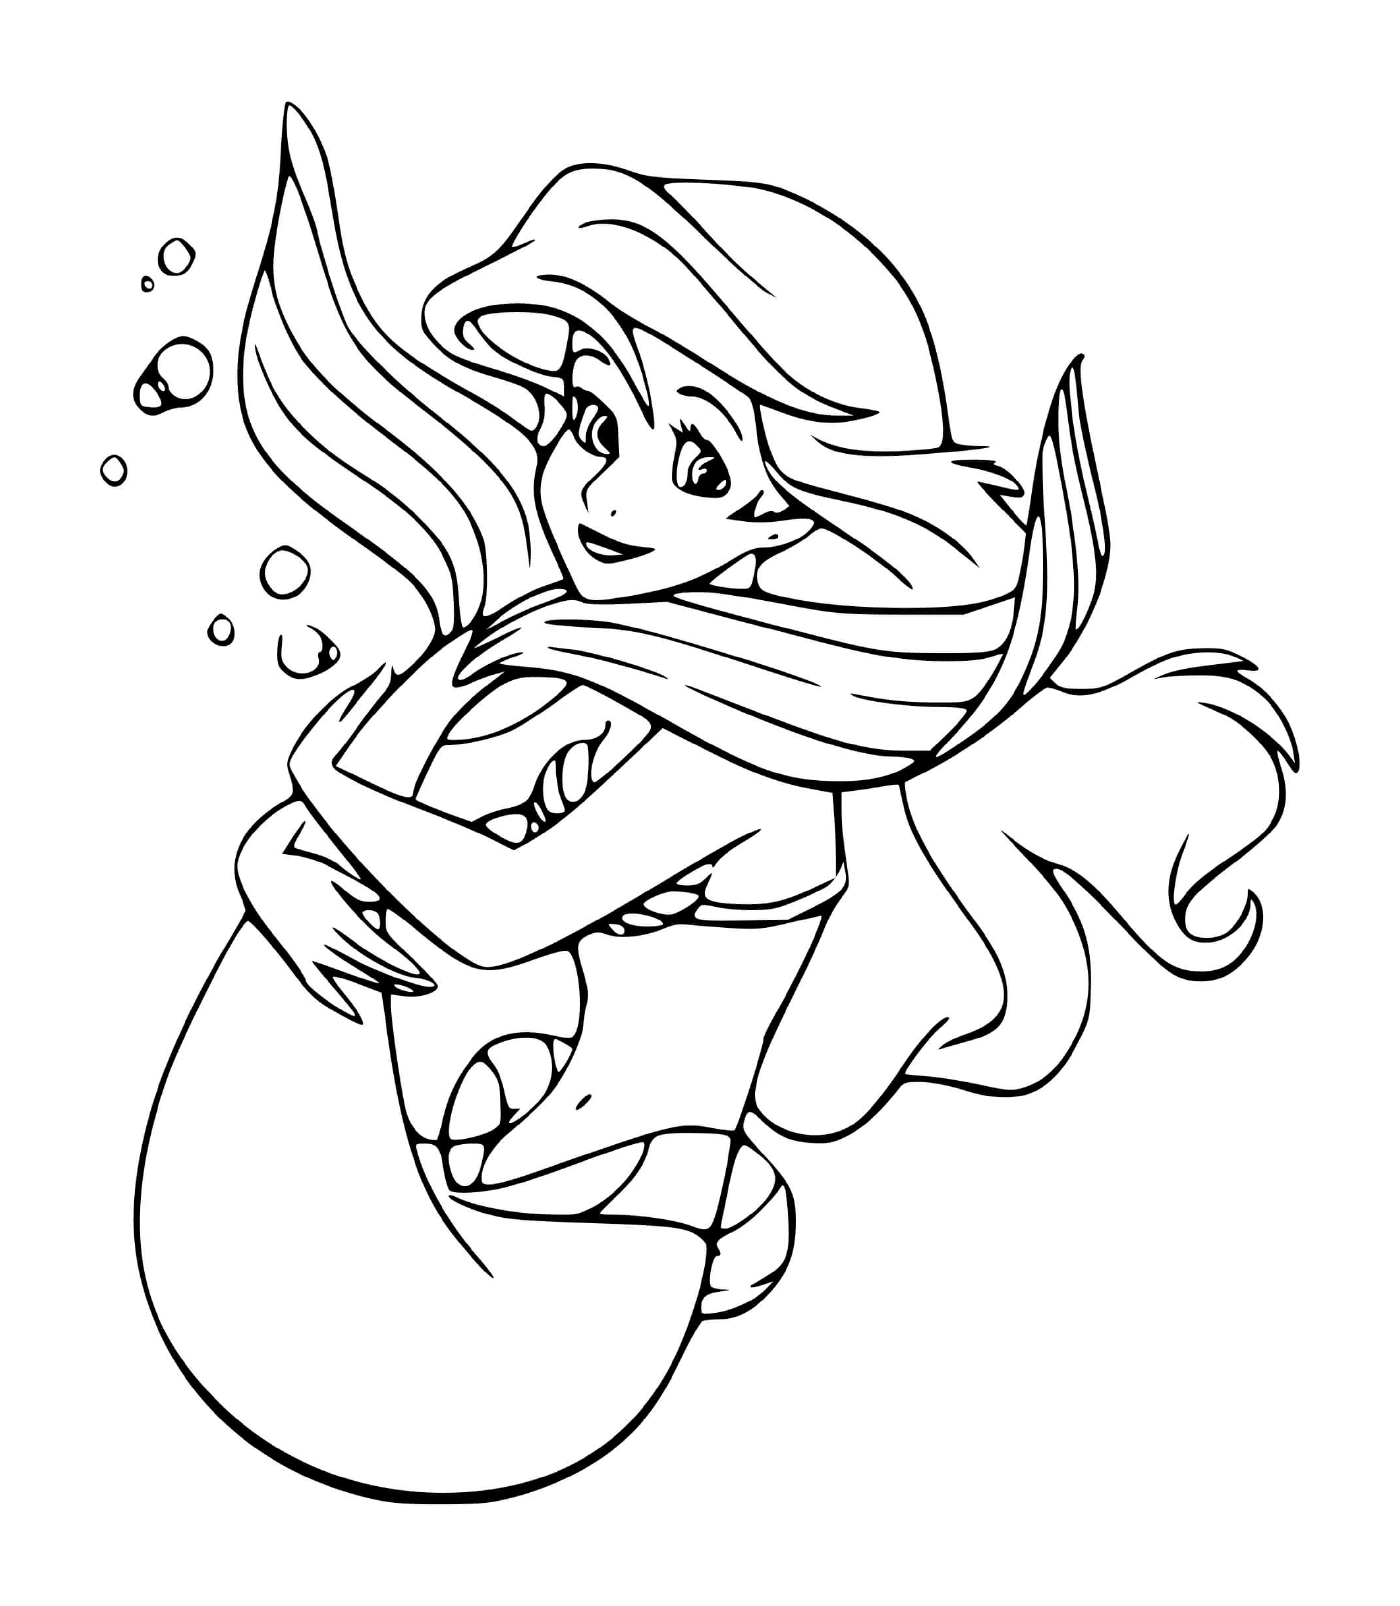   Ariel, une sirène aventureuse et curieuse du monde 